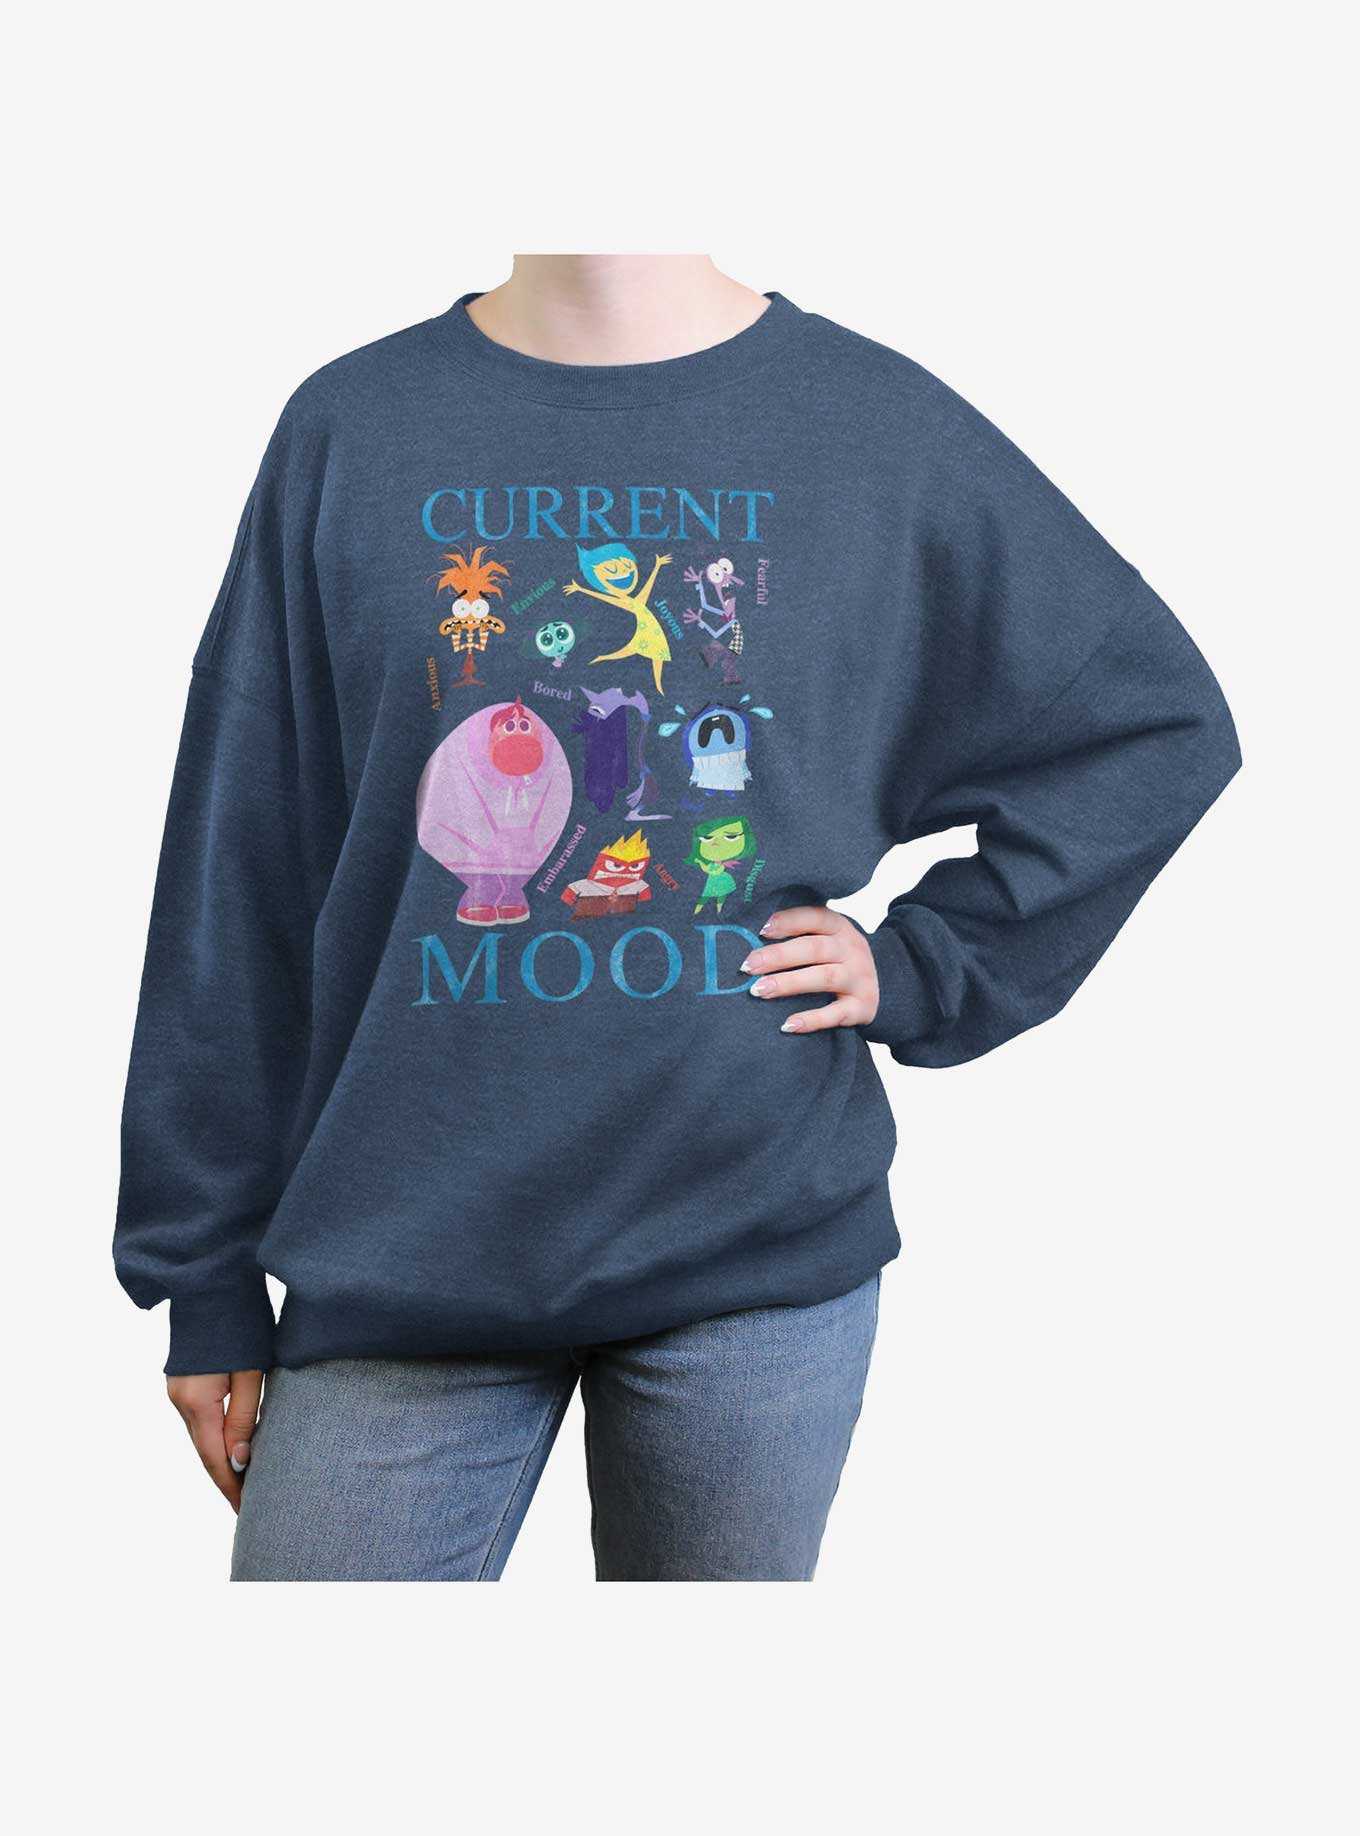 Disney Pixar Inside Out 2 Current Mood Girls Oversized Sweatshirt, , hi-res